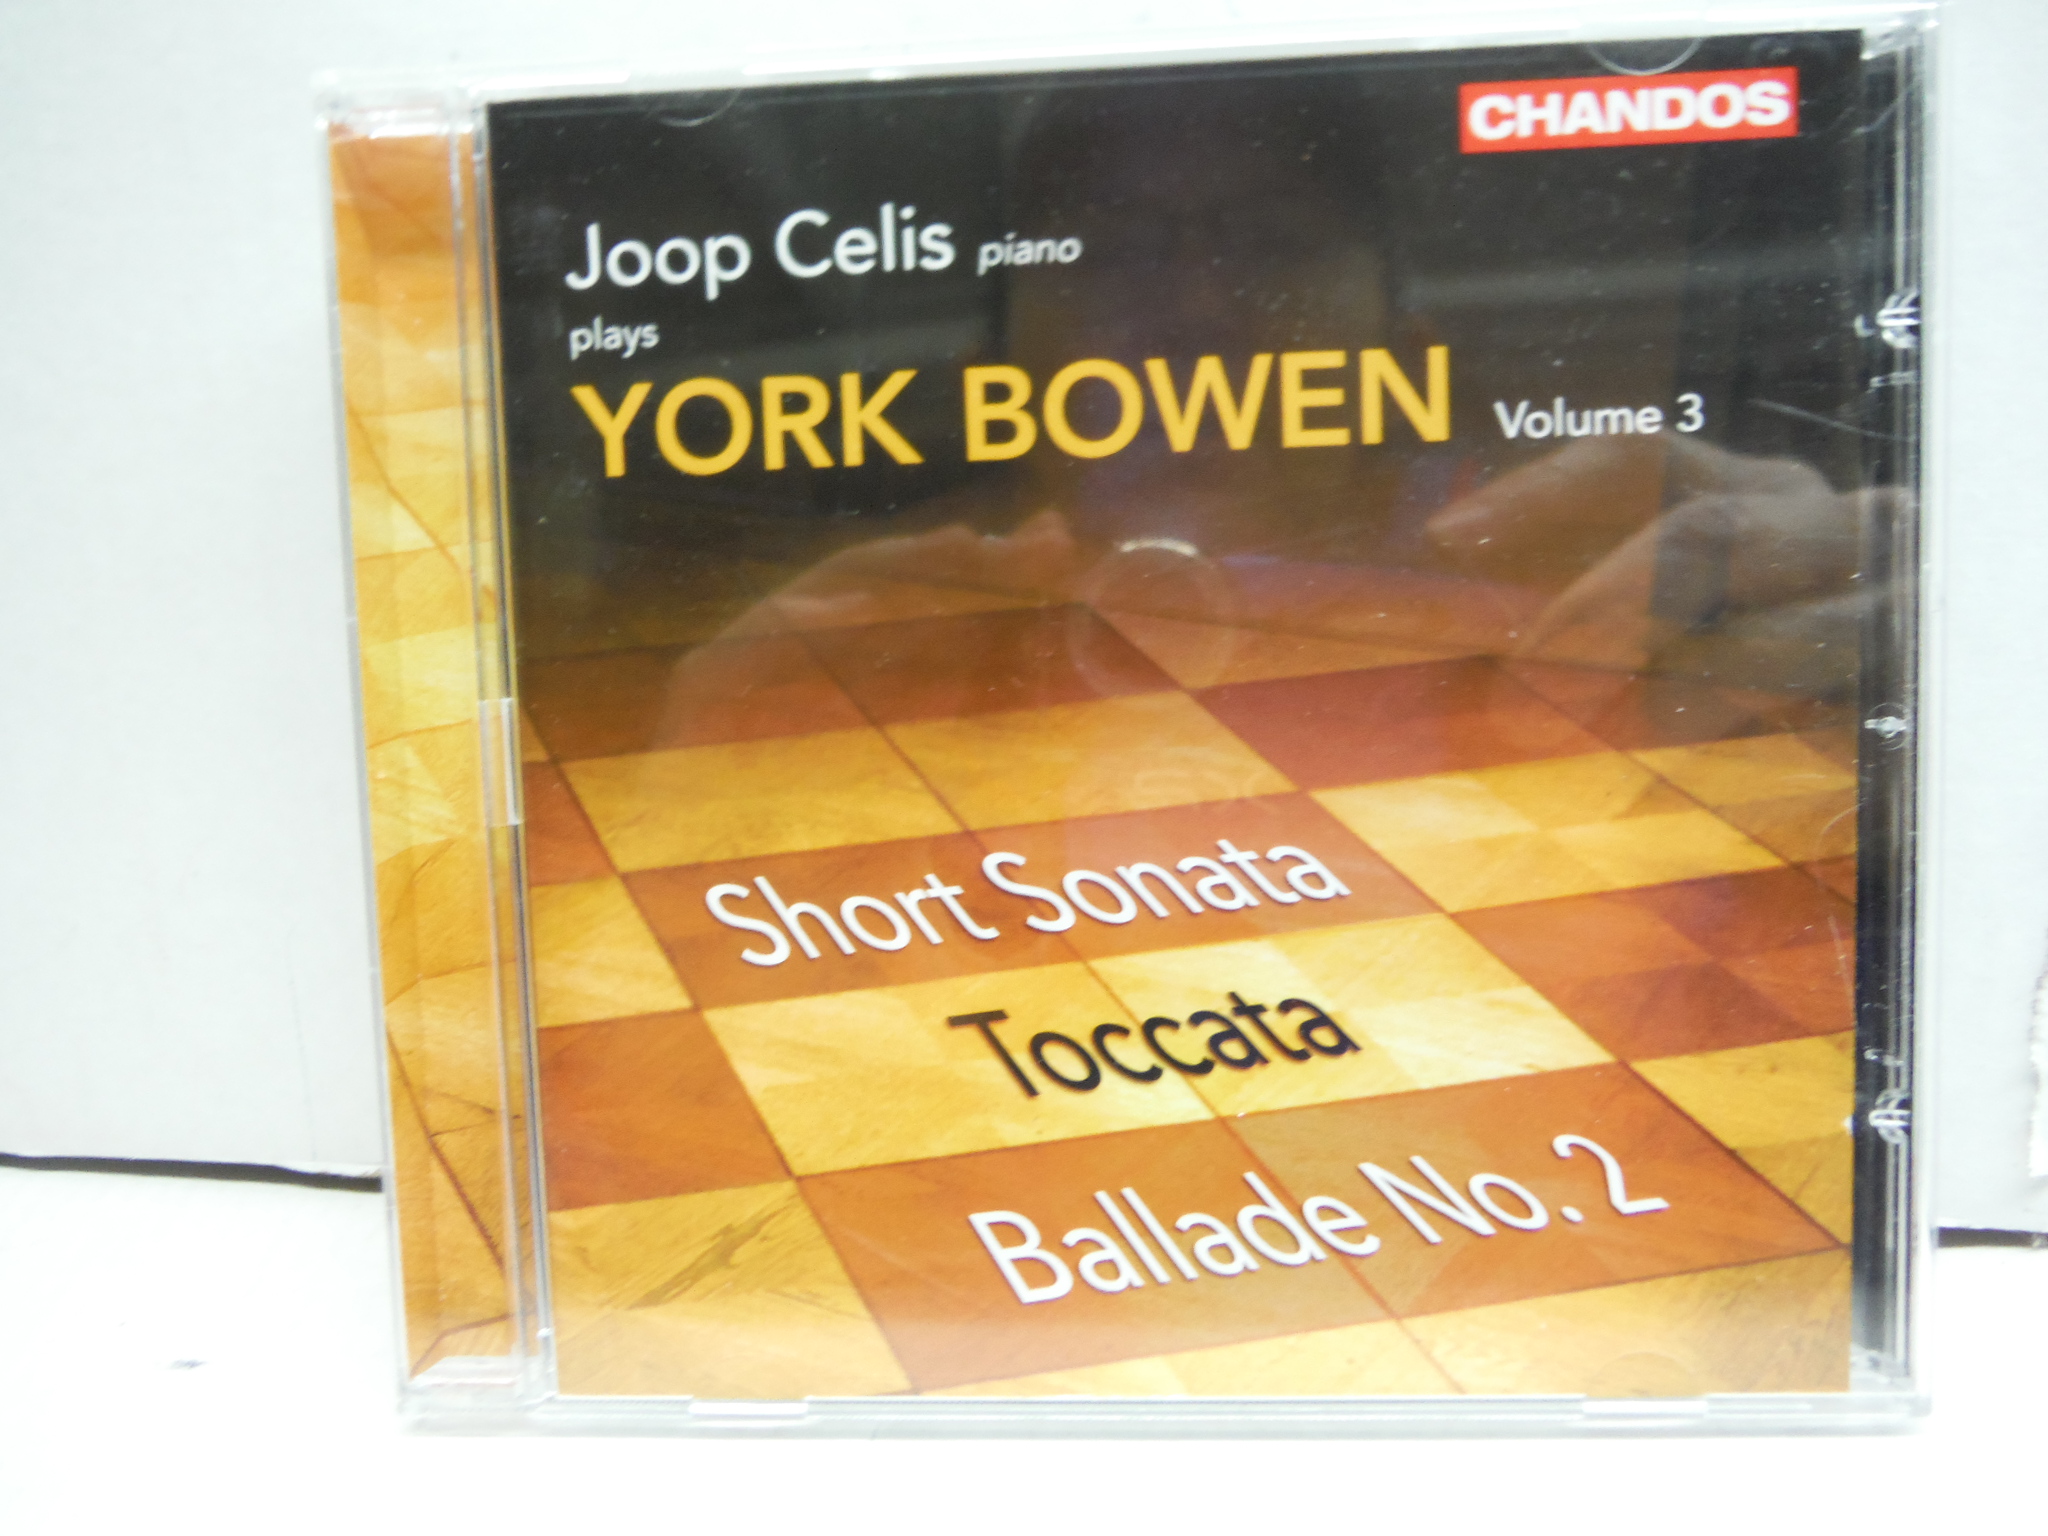 Joop Celis Plays York Bowen - Short Sonata; Toccata; Ballade No. 2 - Vol. 3